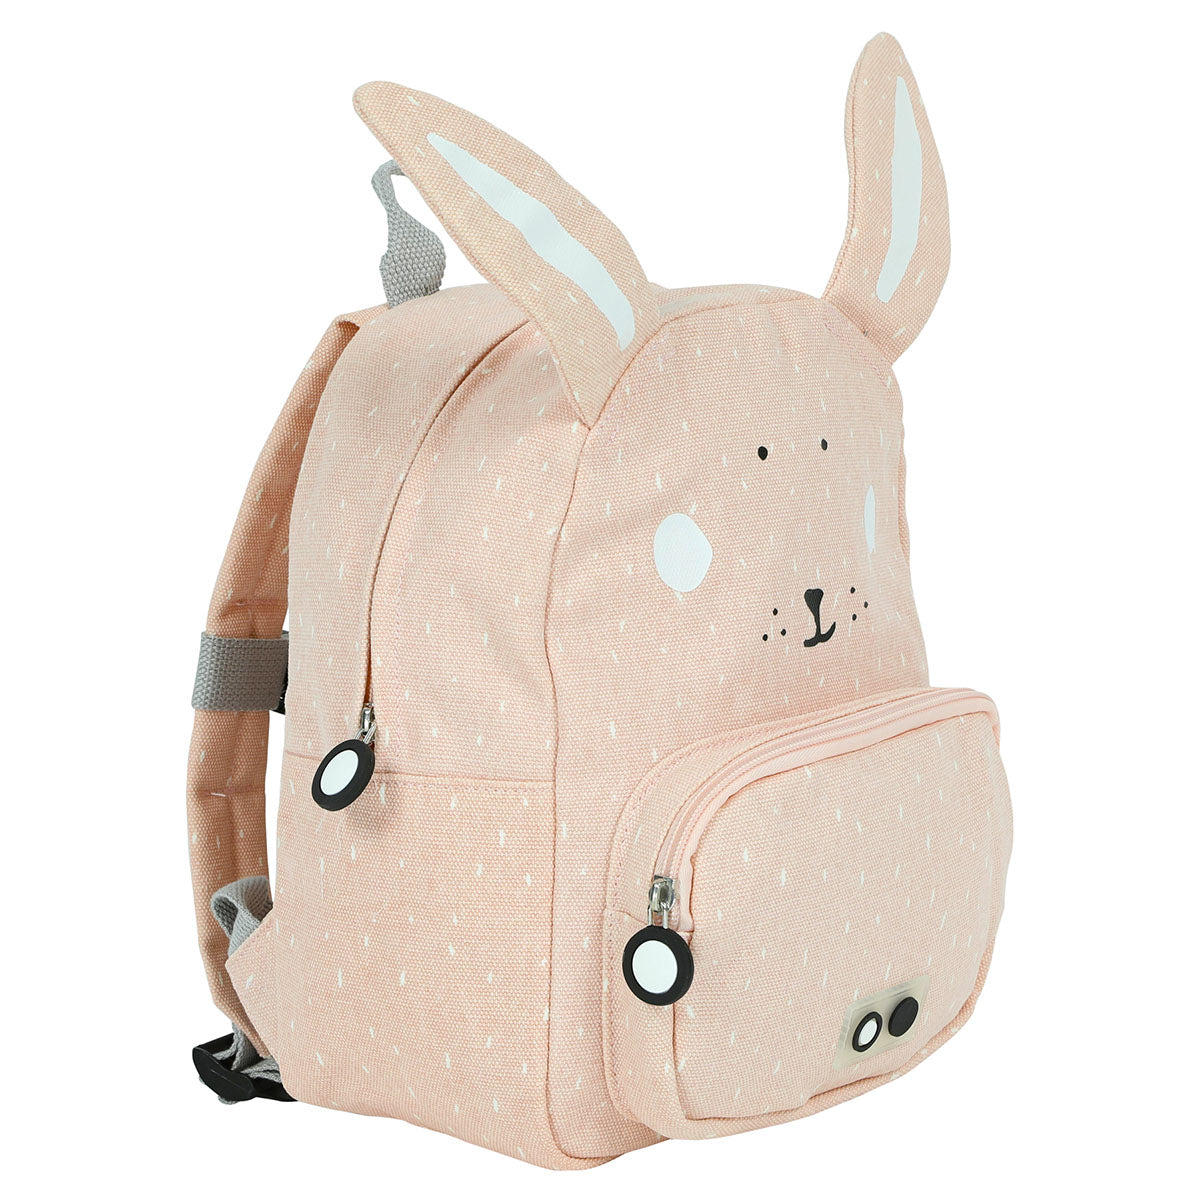 Met de Trixie Mrs. Rabbit rugzak ben je klaar voor avontuur! In deze roze schooltas kan je al je spulletjes kwijt voor een dagje weg. De roze rugzak komt in de vorm van een lief konijntje. VanZus.